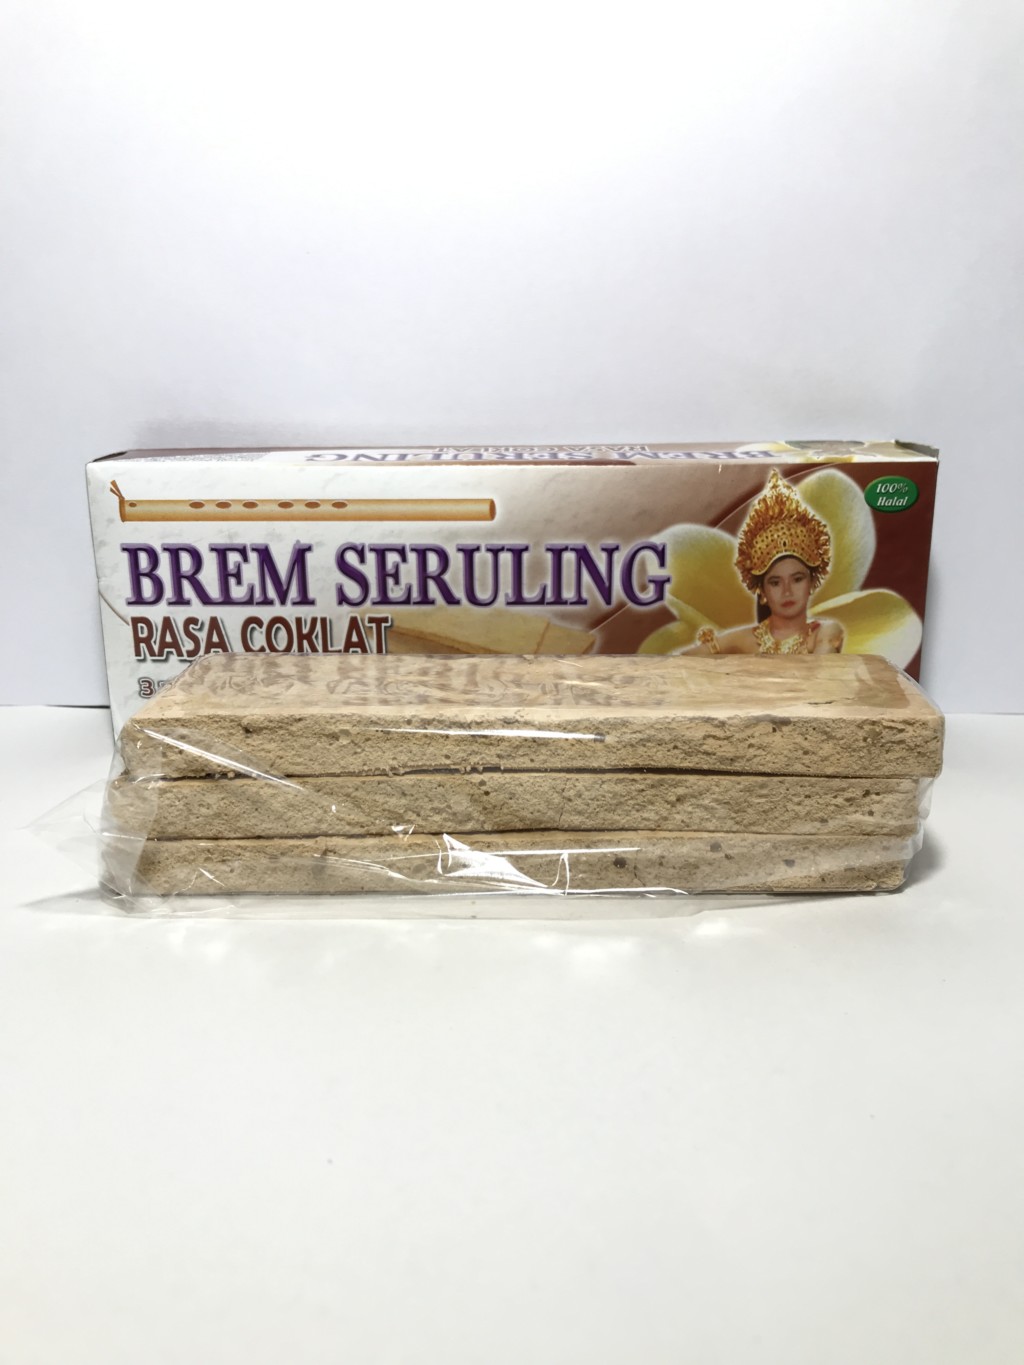 インドネシアの甘酒菓子でRajawaliの『BREM SERULING RASA COKLAT』中身